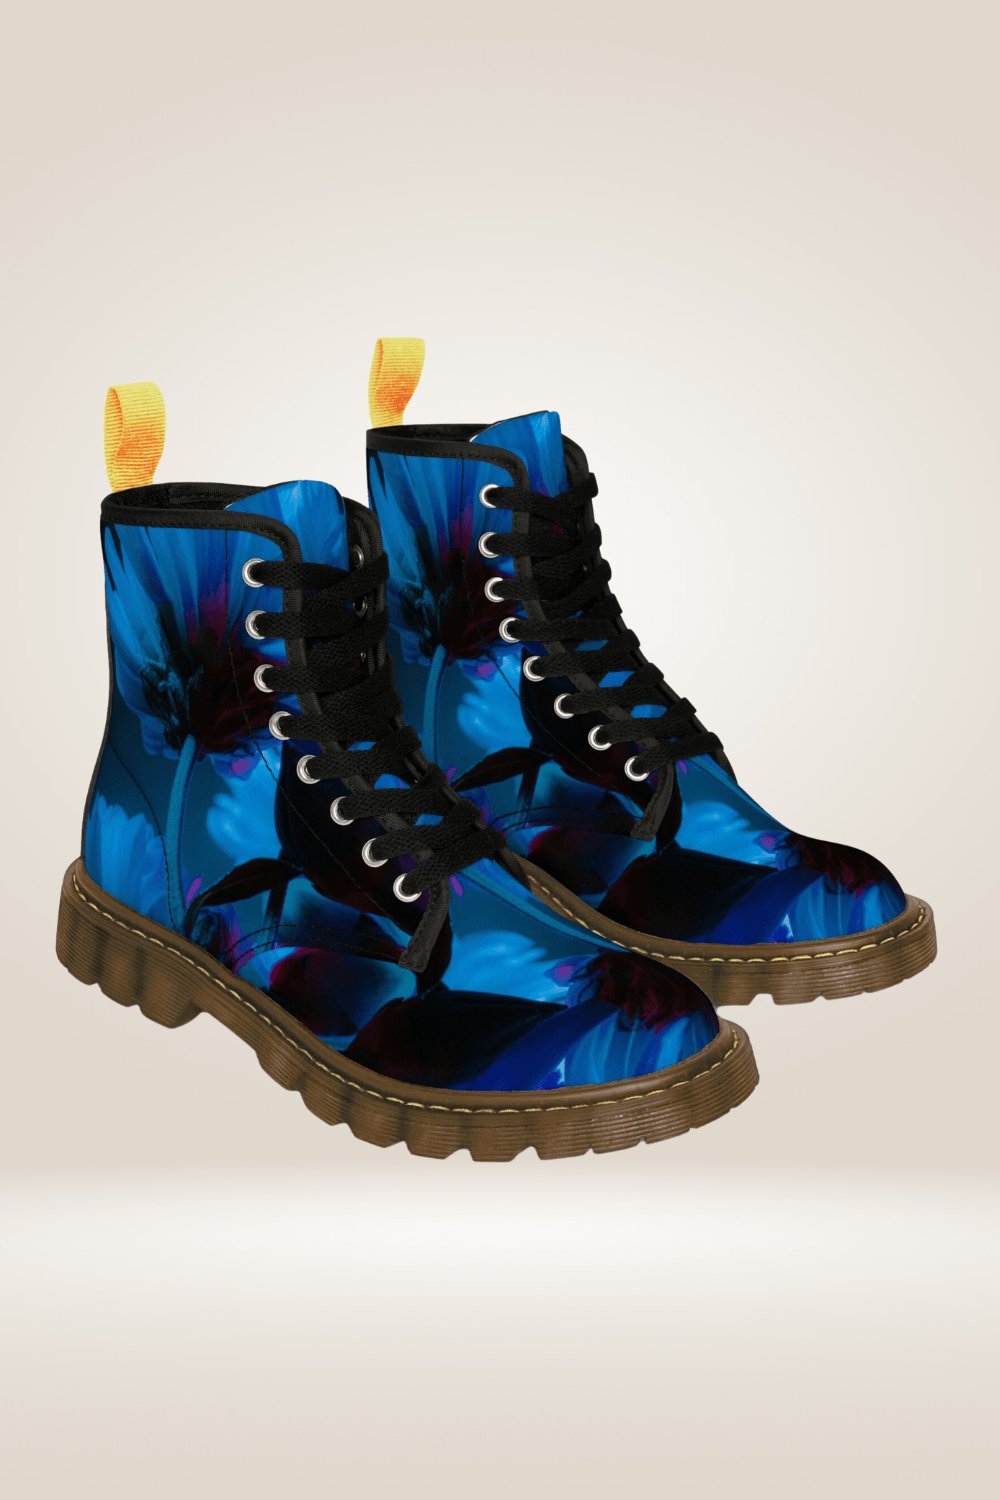 Blue Flower Print Combat Boots - Brown Sole - TGC Boutique - Boots